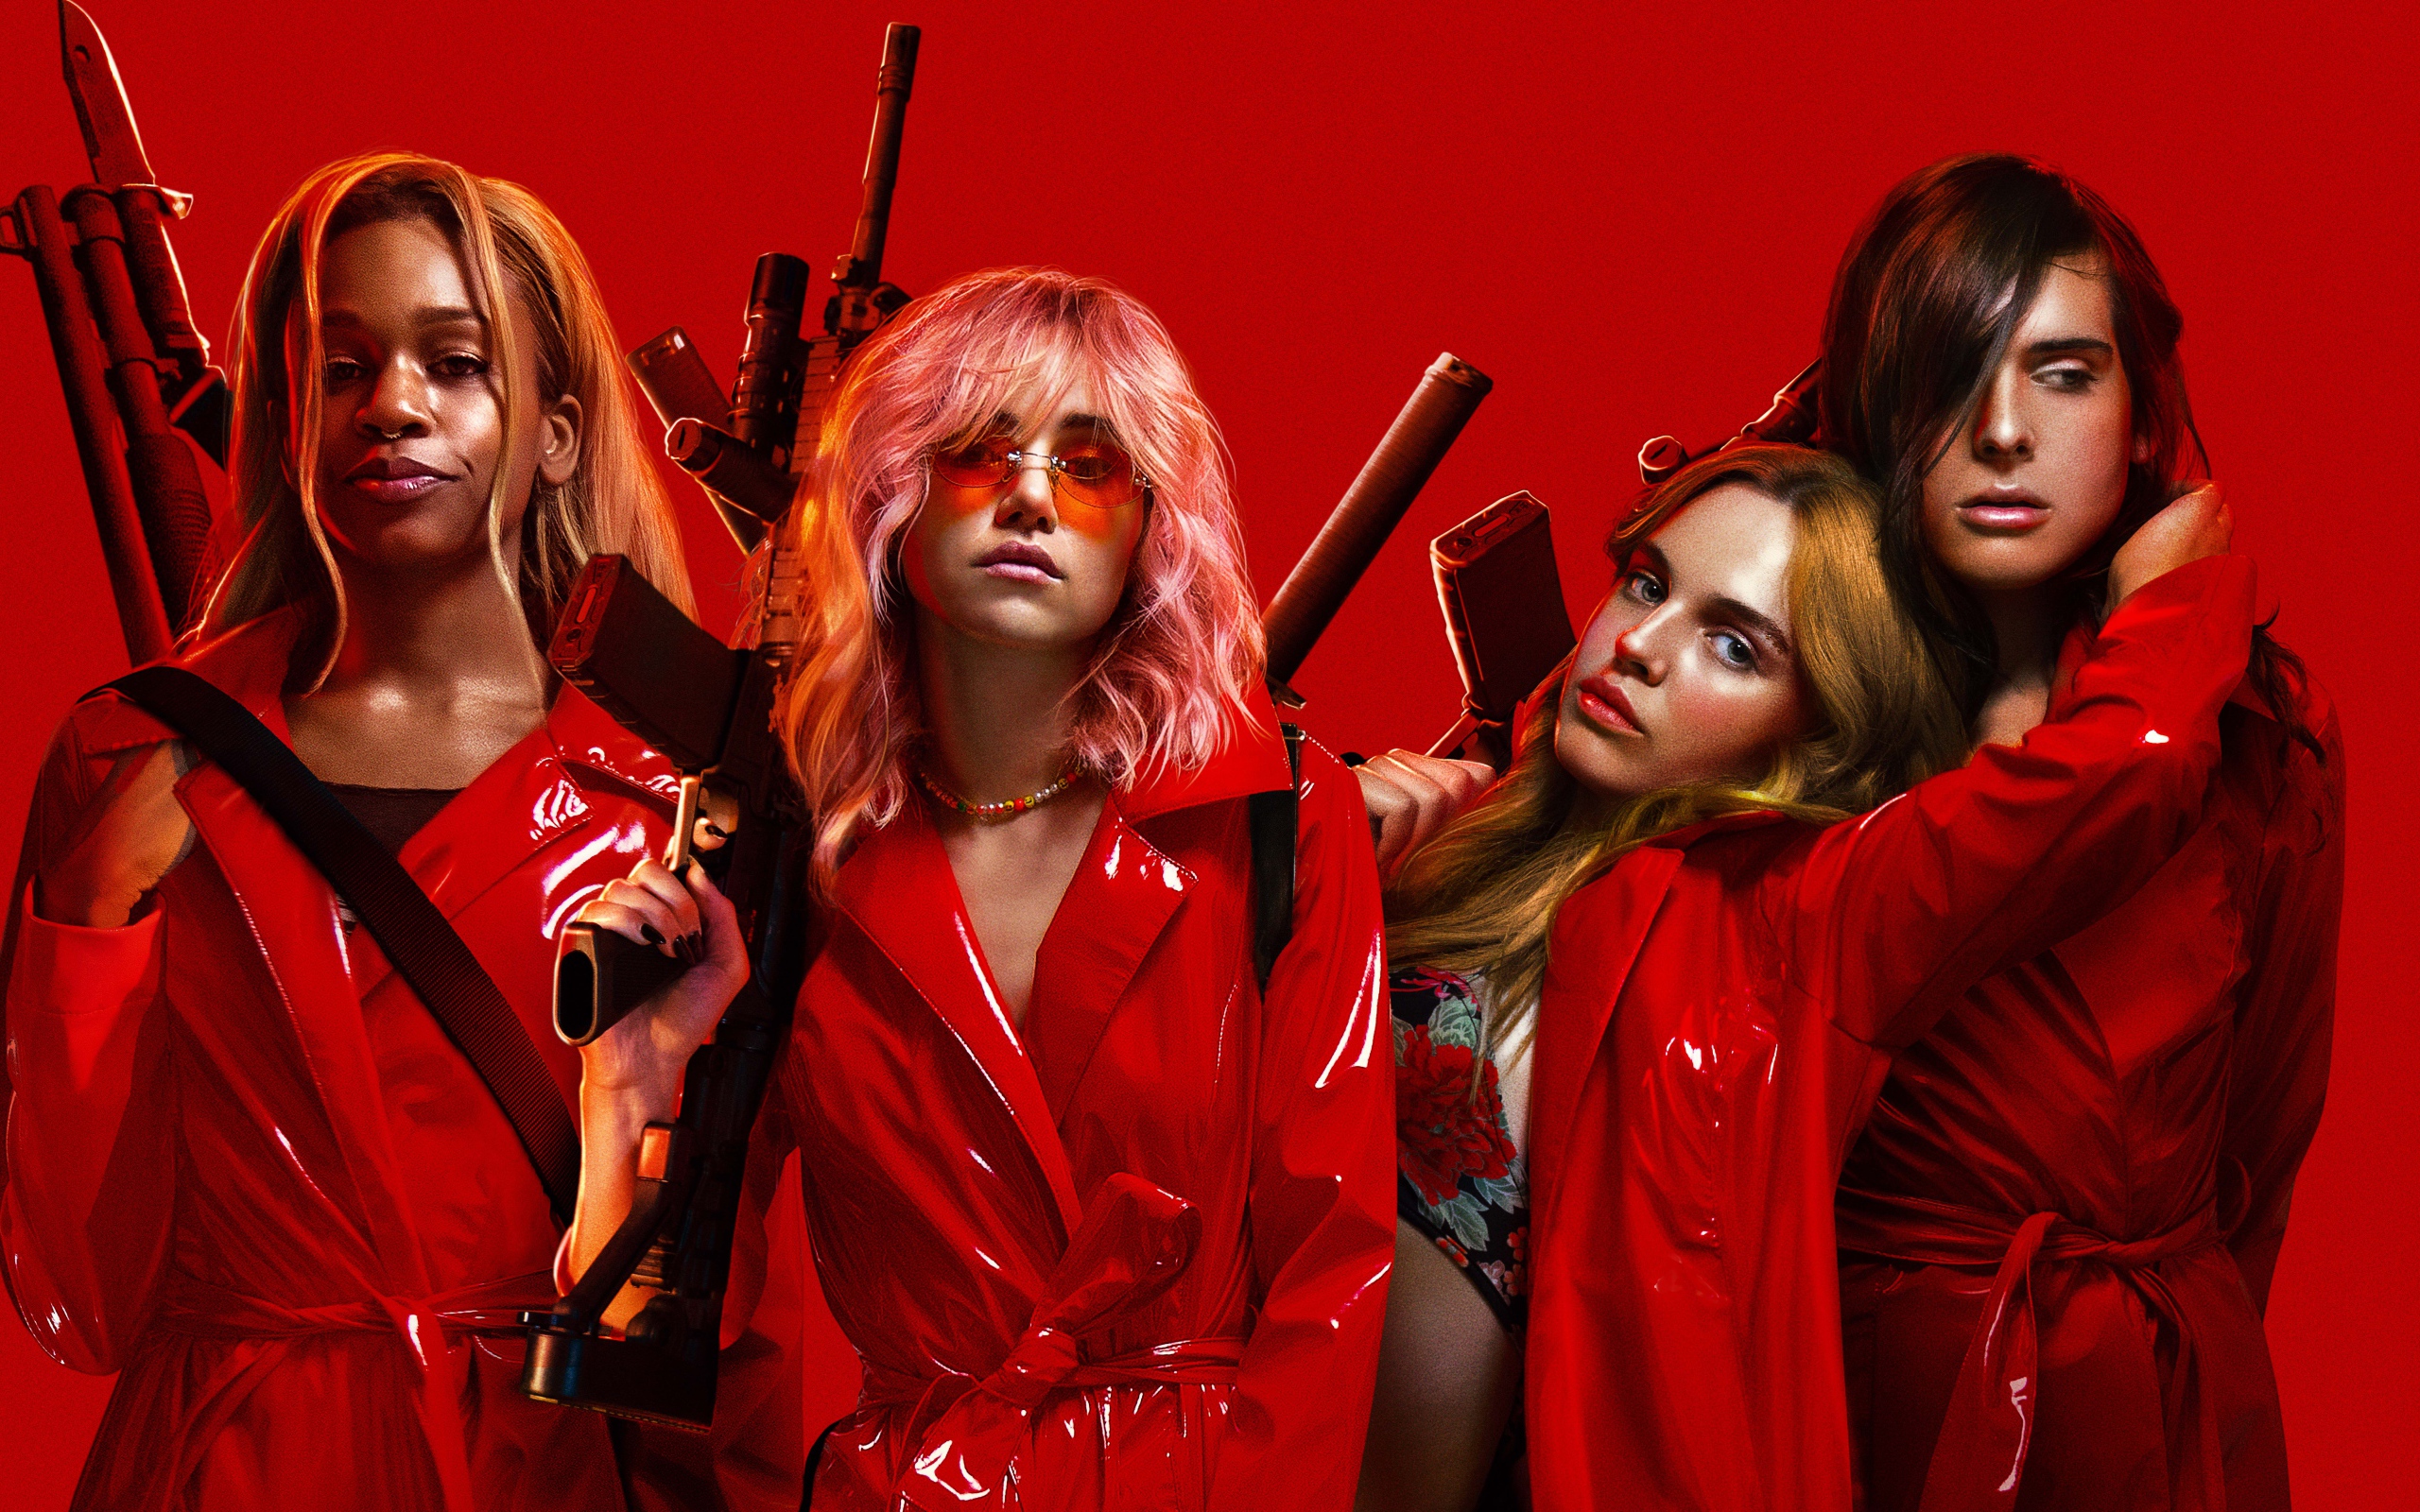 Постер фильма Нация убийц, 2018 на красном фоне